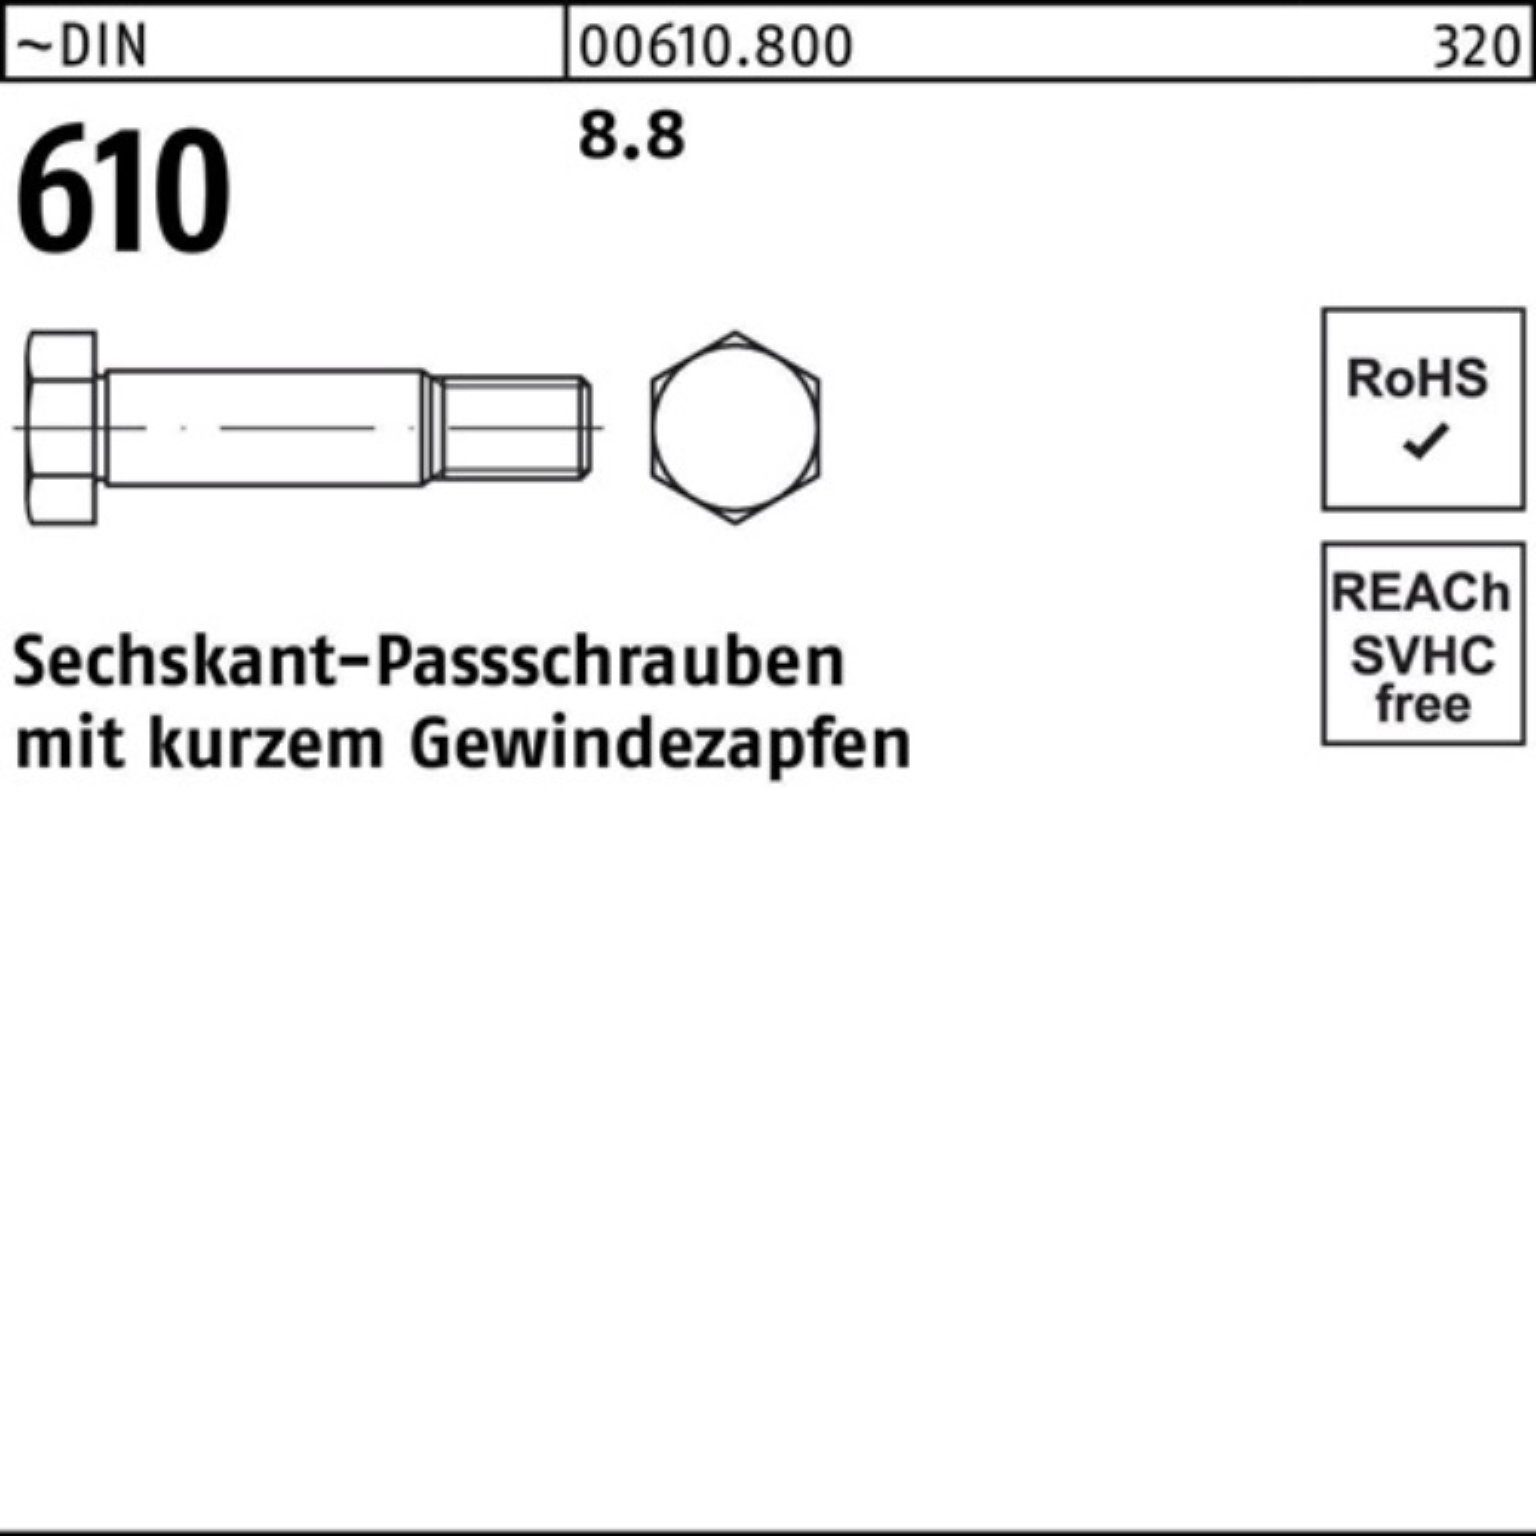 100er Gewindezapfen DIN Schraube 610 60 Sechskantpassschraube Reyher Pack M14x kurzem